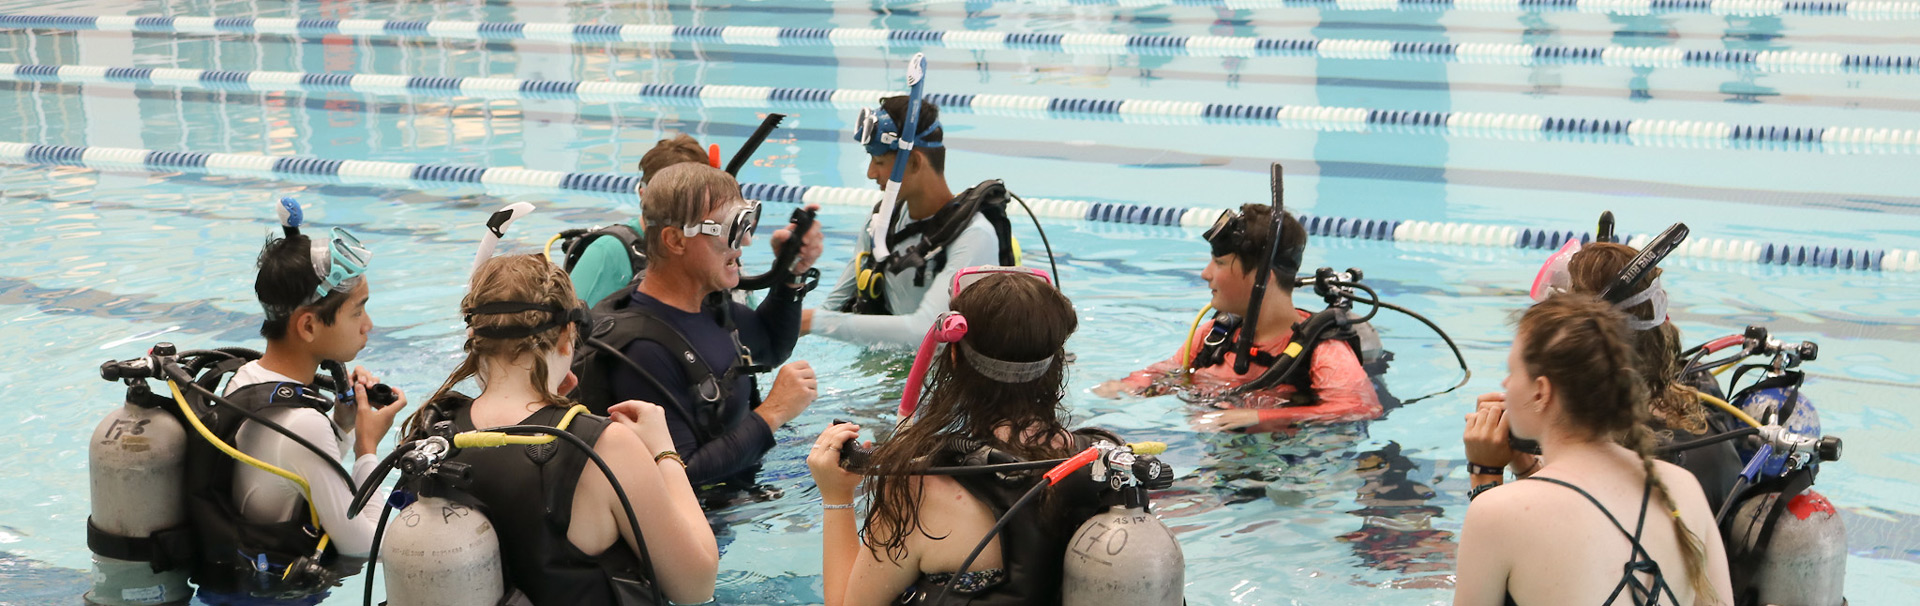 Scuba class wearing scuba gear in pool